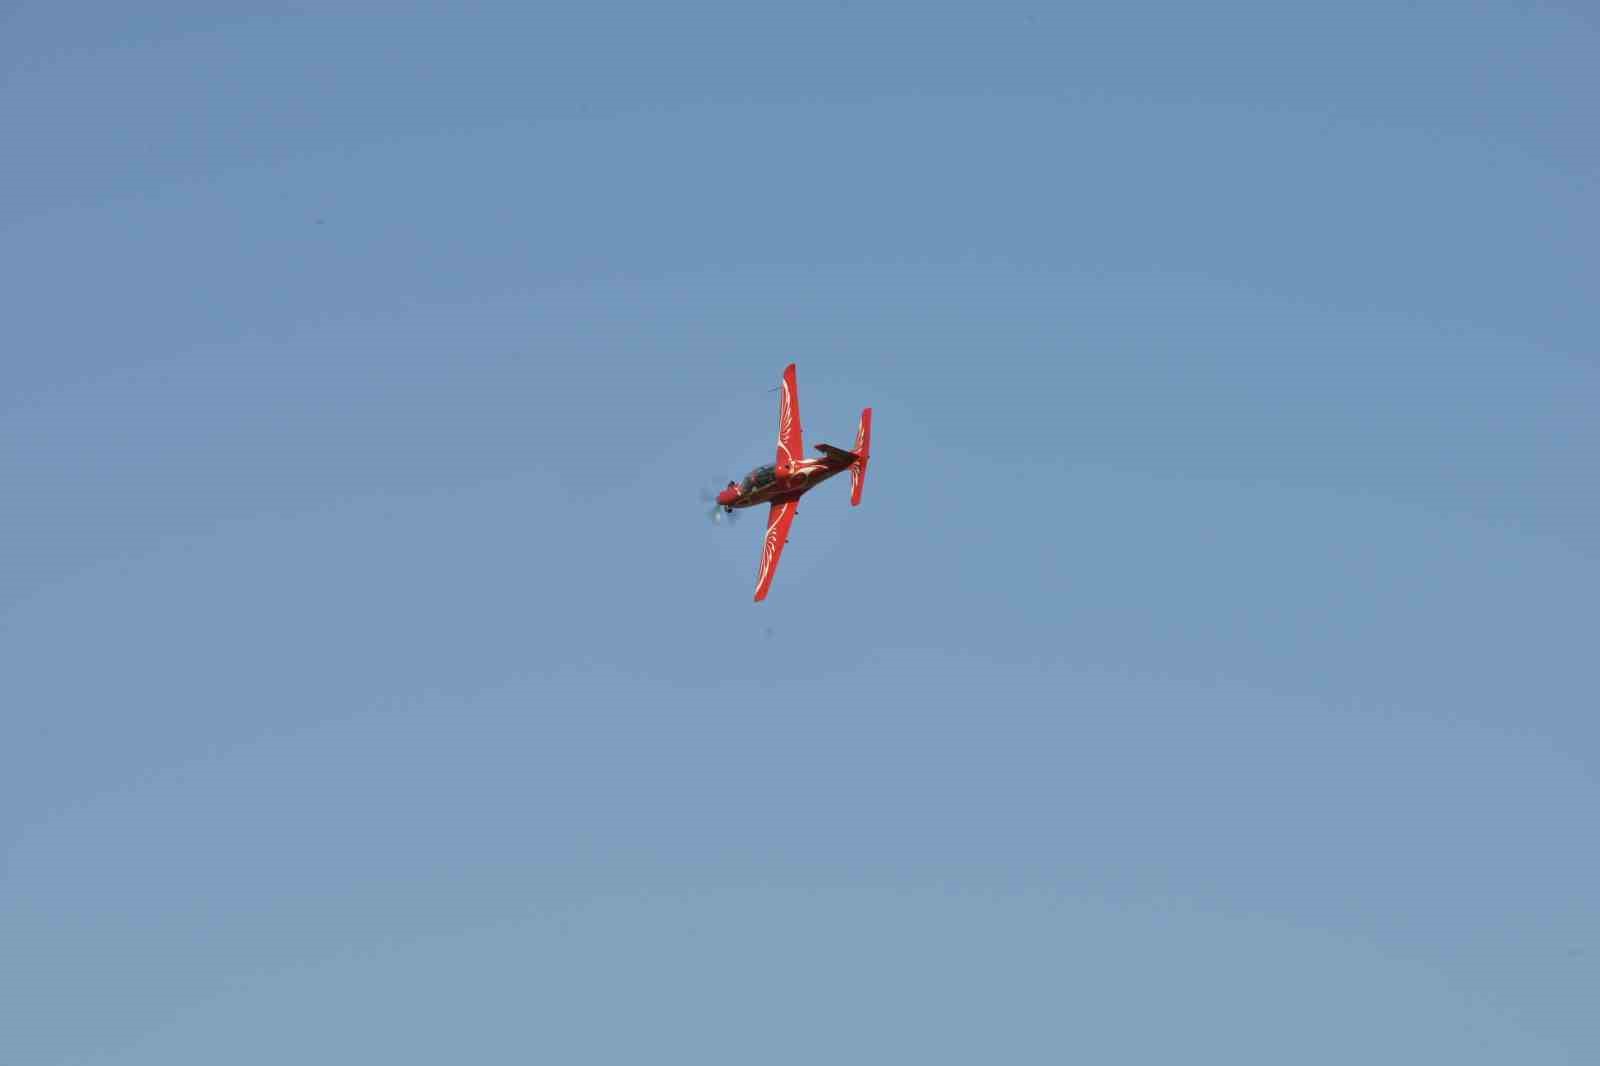 Türkiye’nin ilk kadın akrobasi pilotu ve yerli uçağımız Hürkuş izleyenleri mest etti